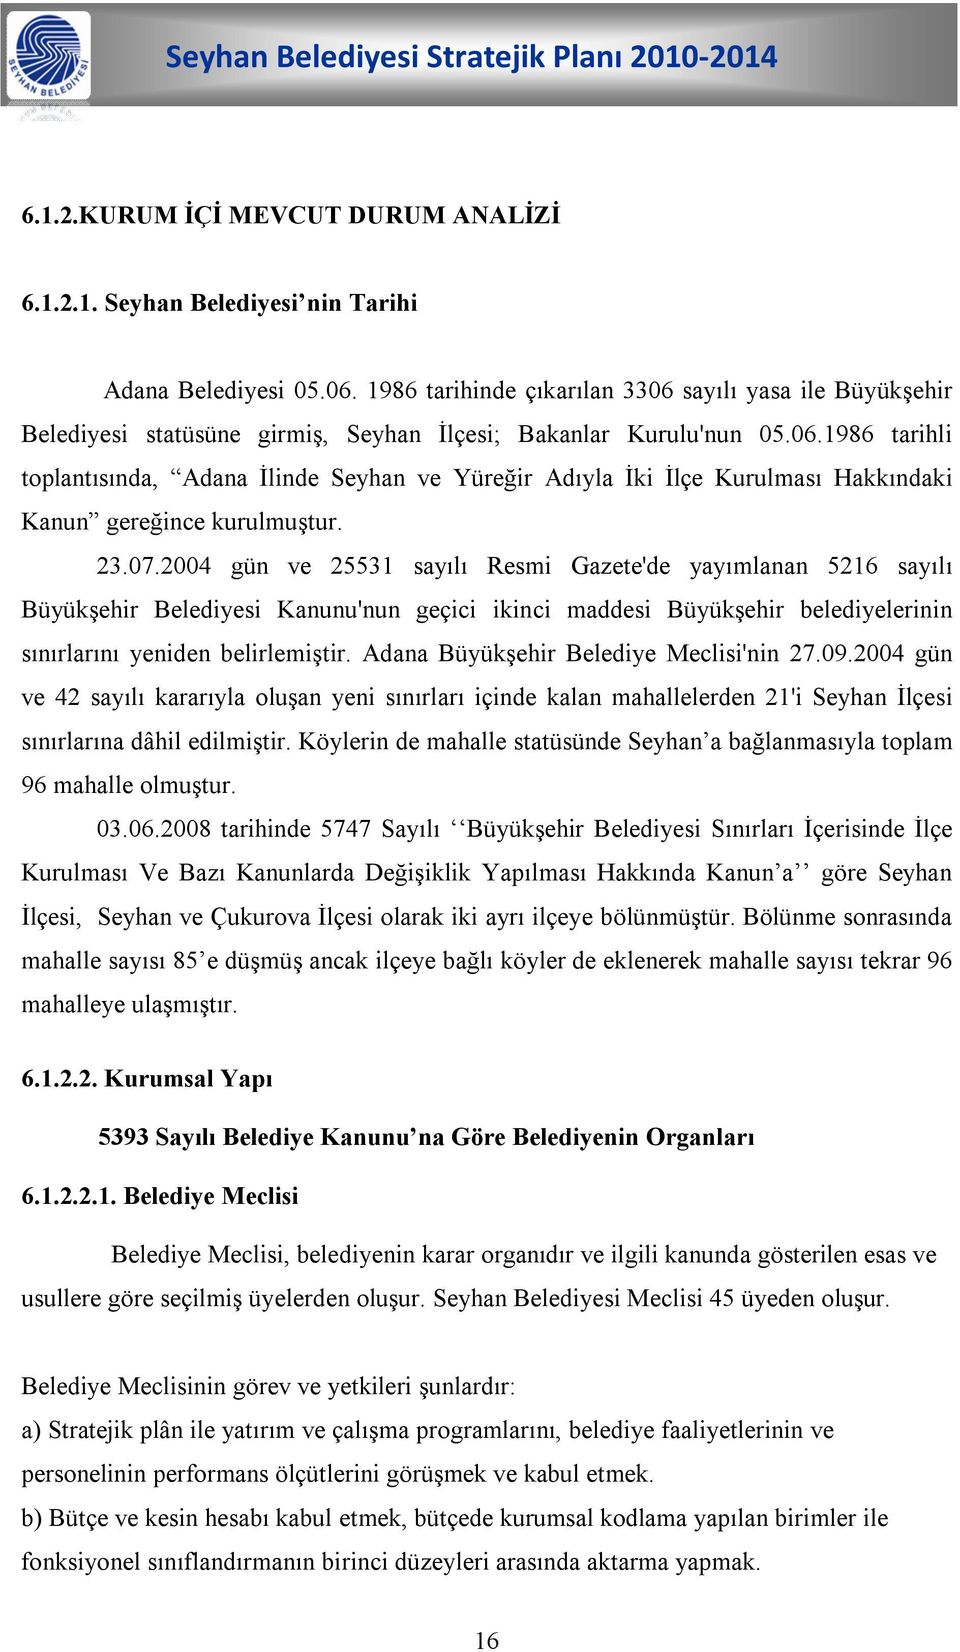 23.07.2004 gün ve 25531 sayılı Resmi Gazete'de yayımlanan 5216 sayılı Büyükşehir Belediyesi Kanunu'nun geçici ikinci maddesi Büyükşehir belediyelerinin sınırlarını yeniden belirlemiştir.